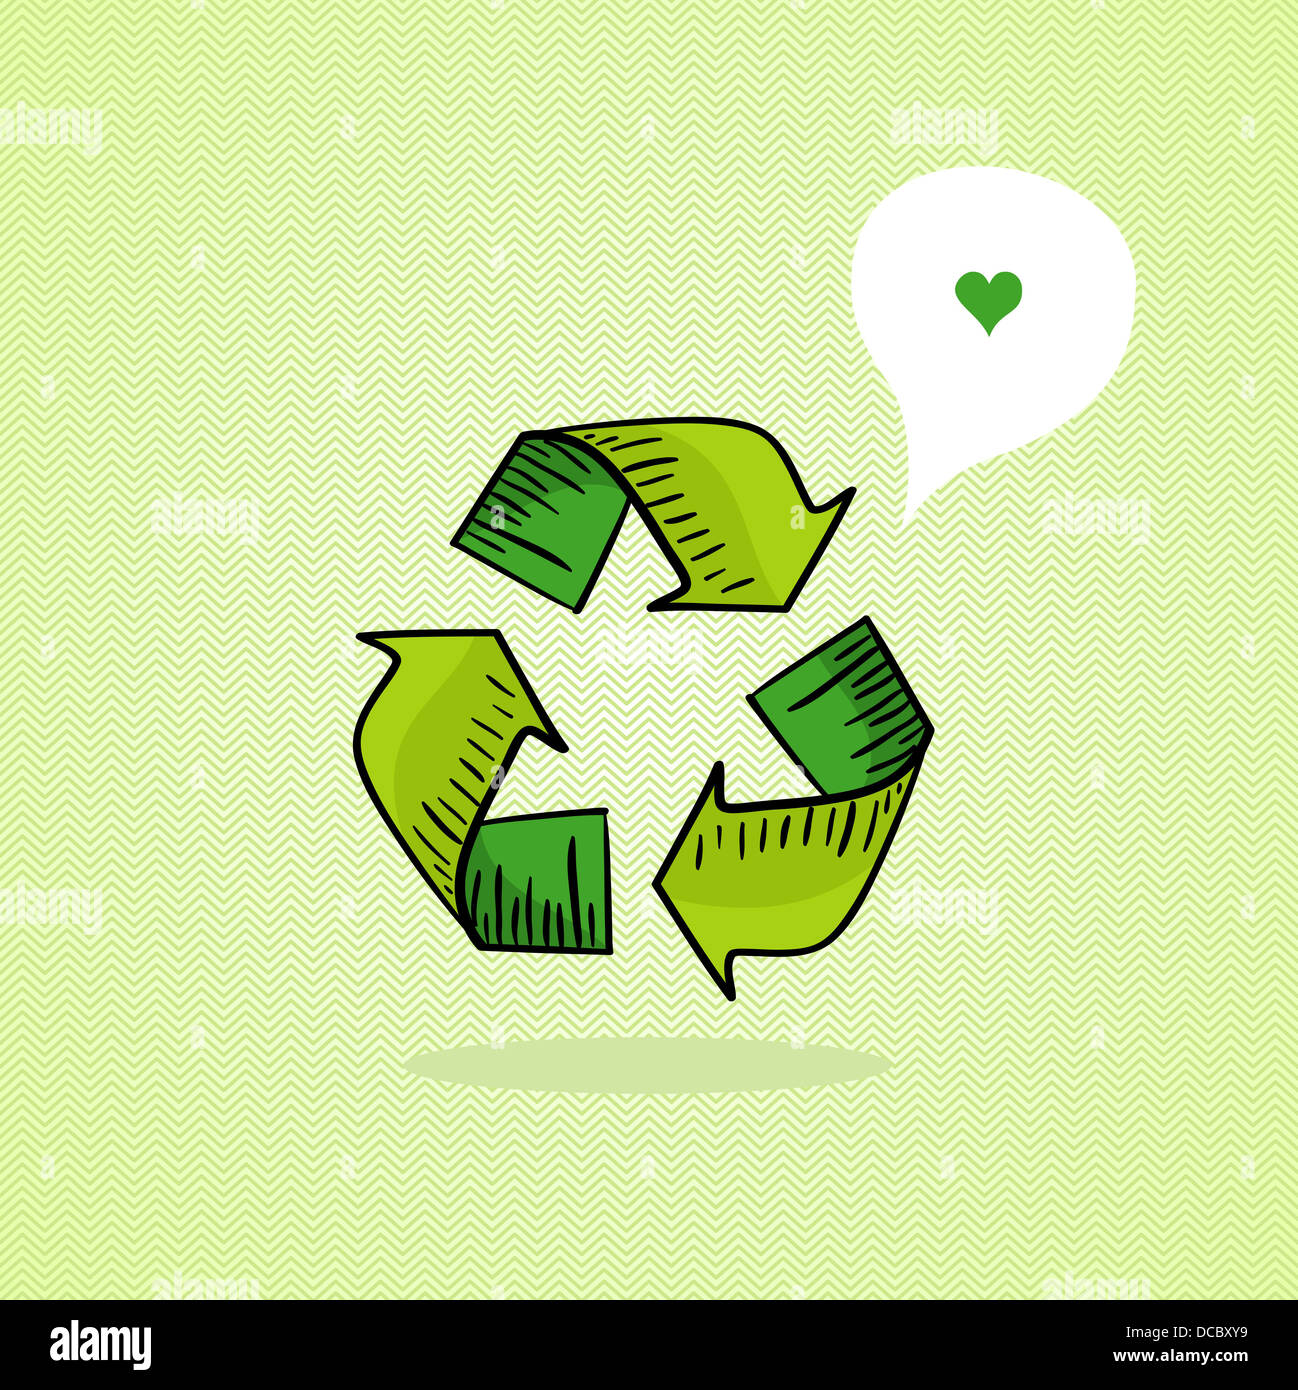 L'icône verte de recycler la main, l'amour social media bubble. Fichier vecteur pour faciliter les modifications en couches Banque D'Images